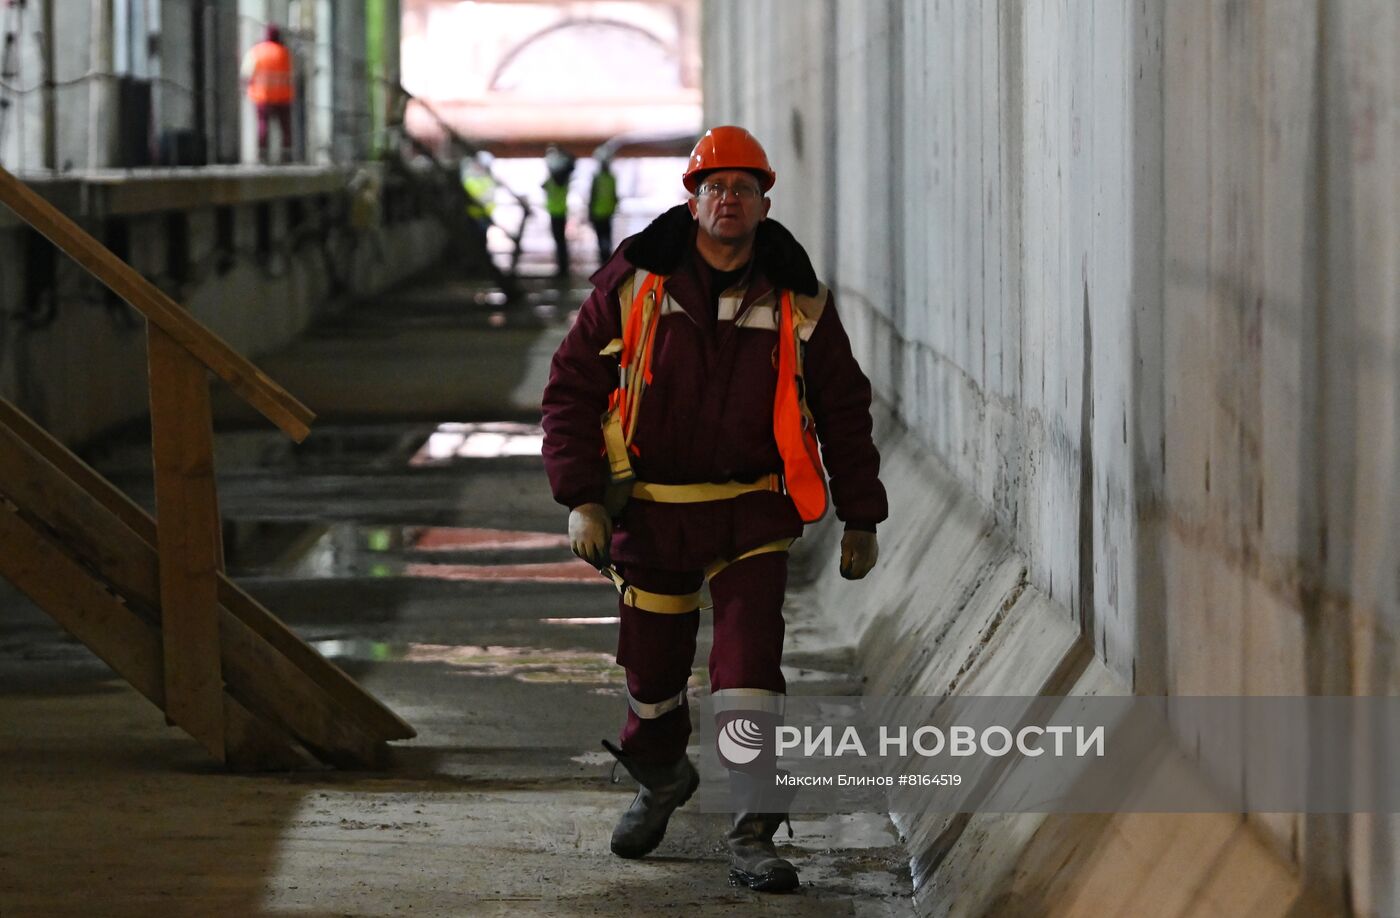 Строительство станции метро "Яхромская" 